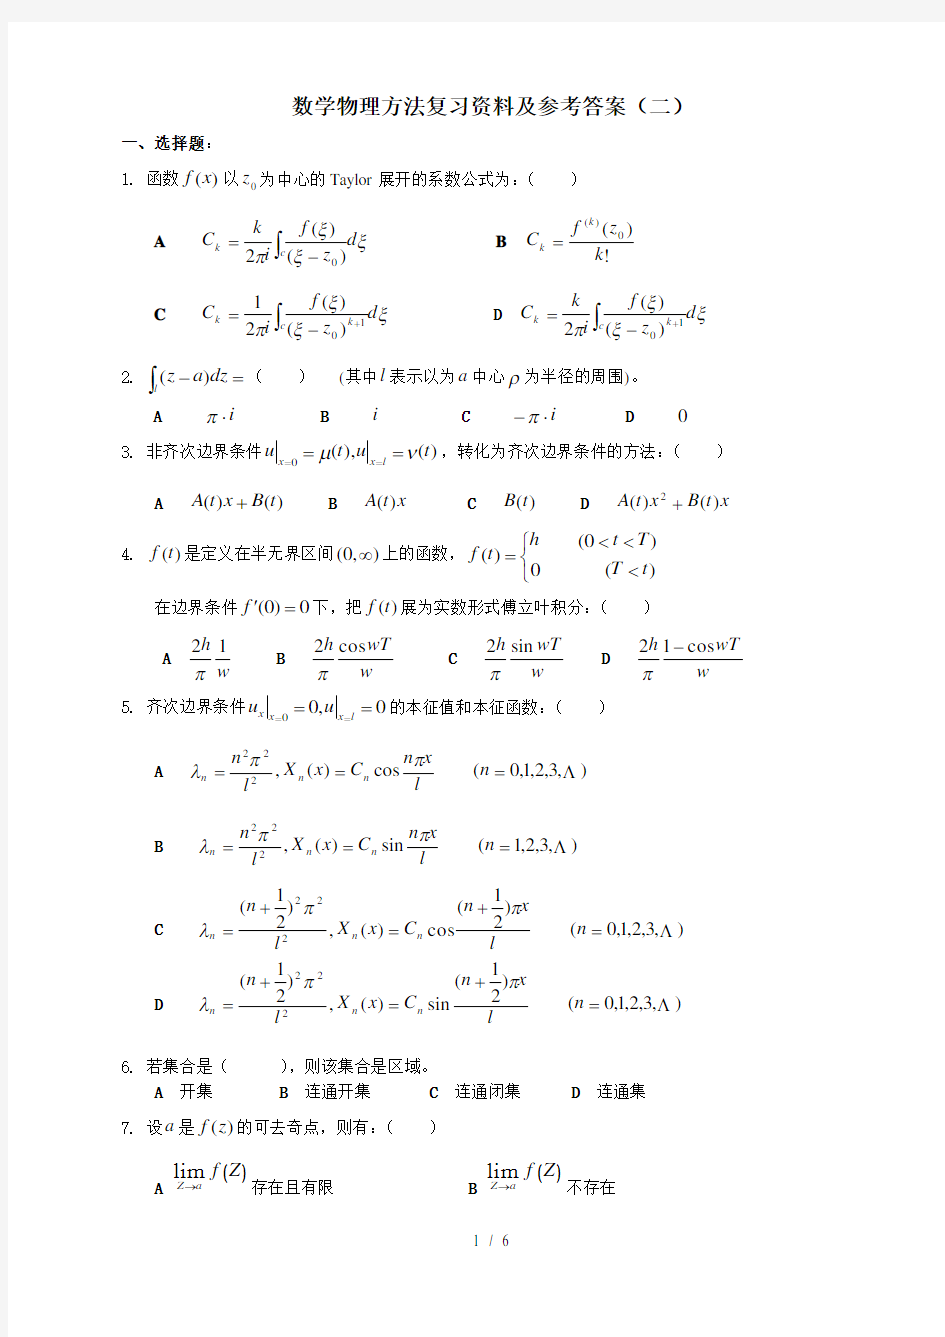 数学物理方法复习资料及参考答案(二)